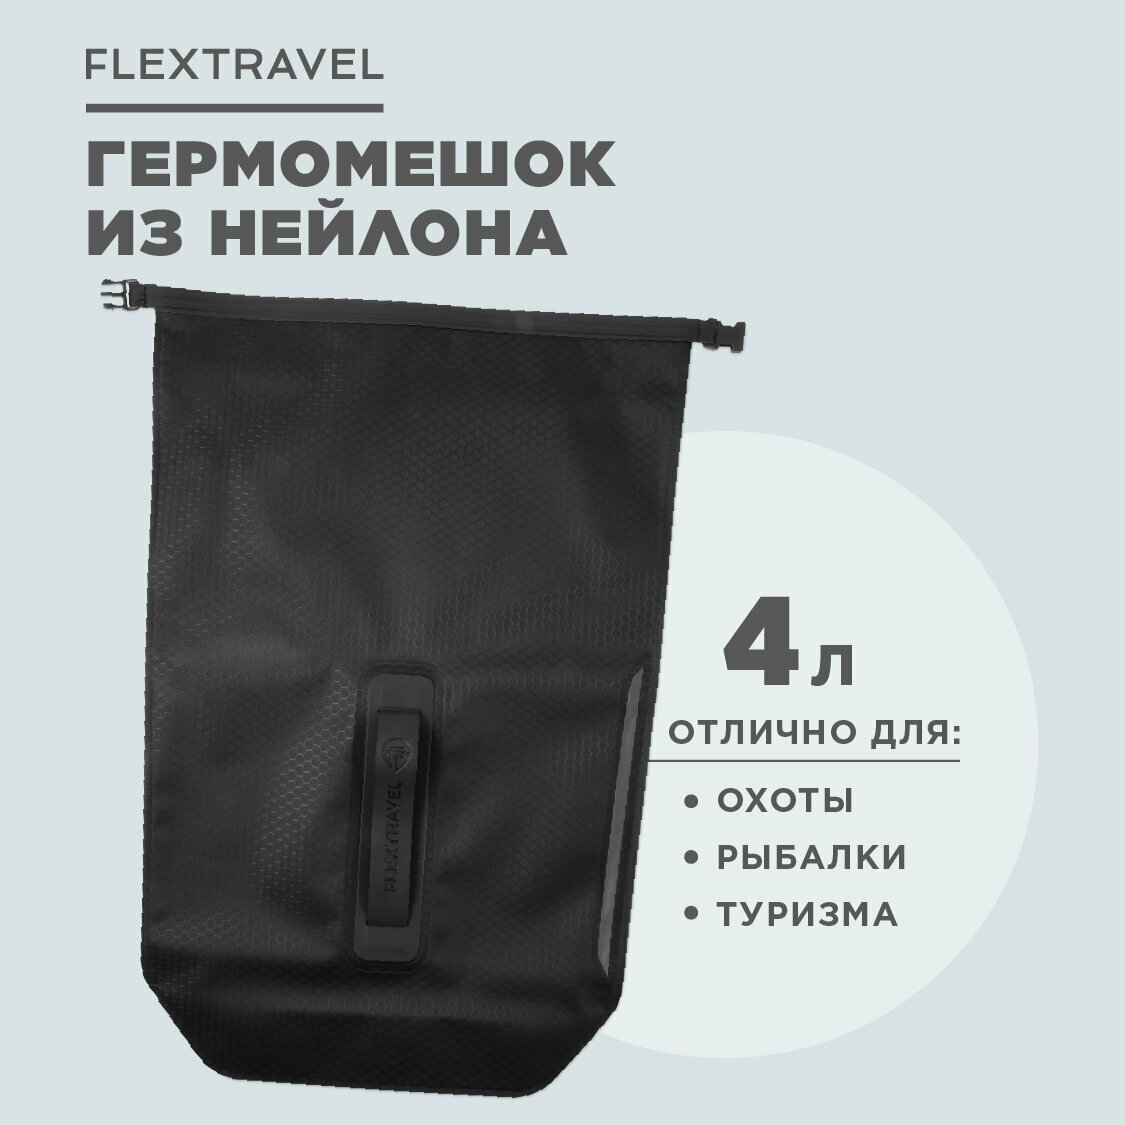 Универсальный гермомешочек FlexTravel, водонепроницаемый мешок на 4 литра, черный